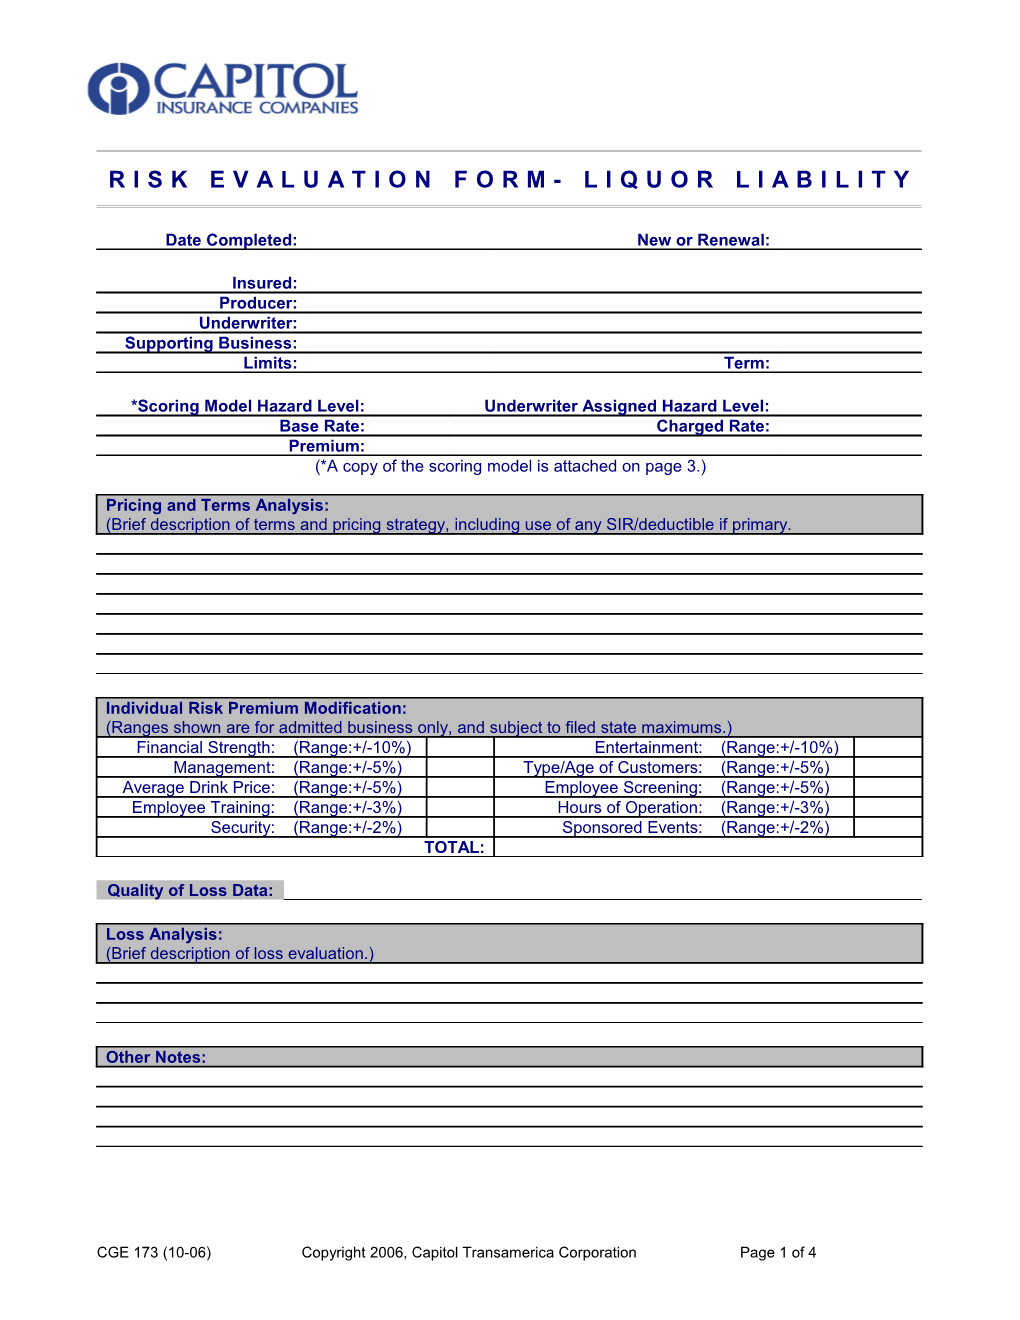 Liquor Liability Risk Evaluation Form